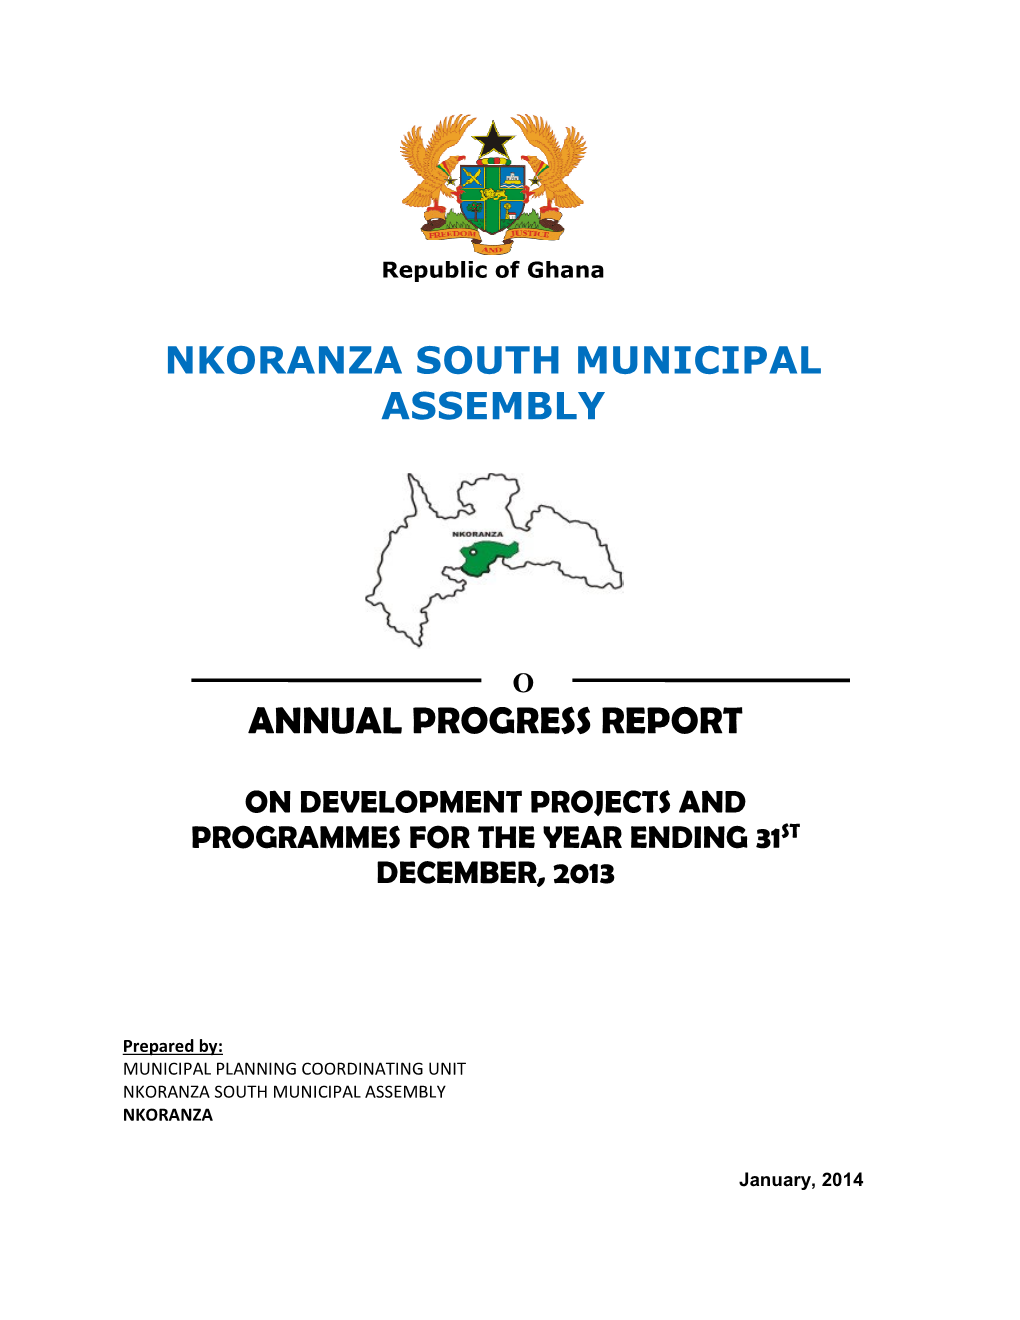 Nkoranza South Municipal Assembly Annual